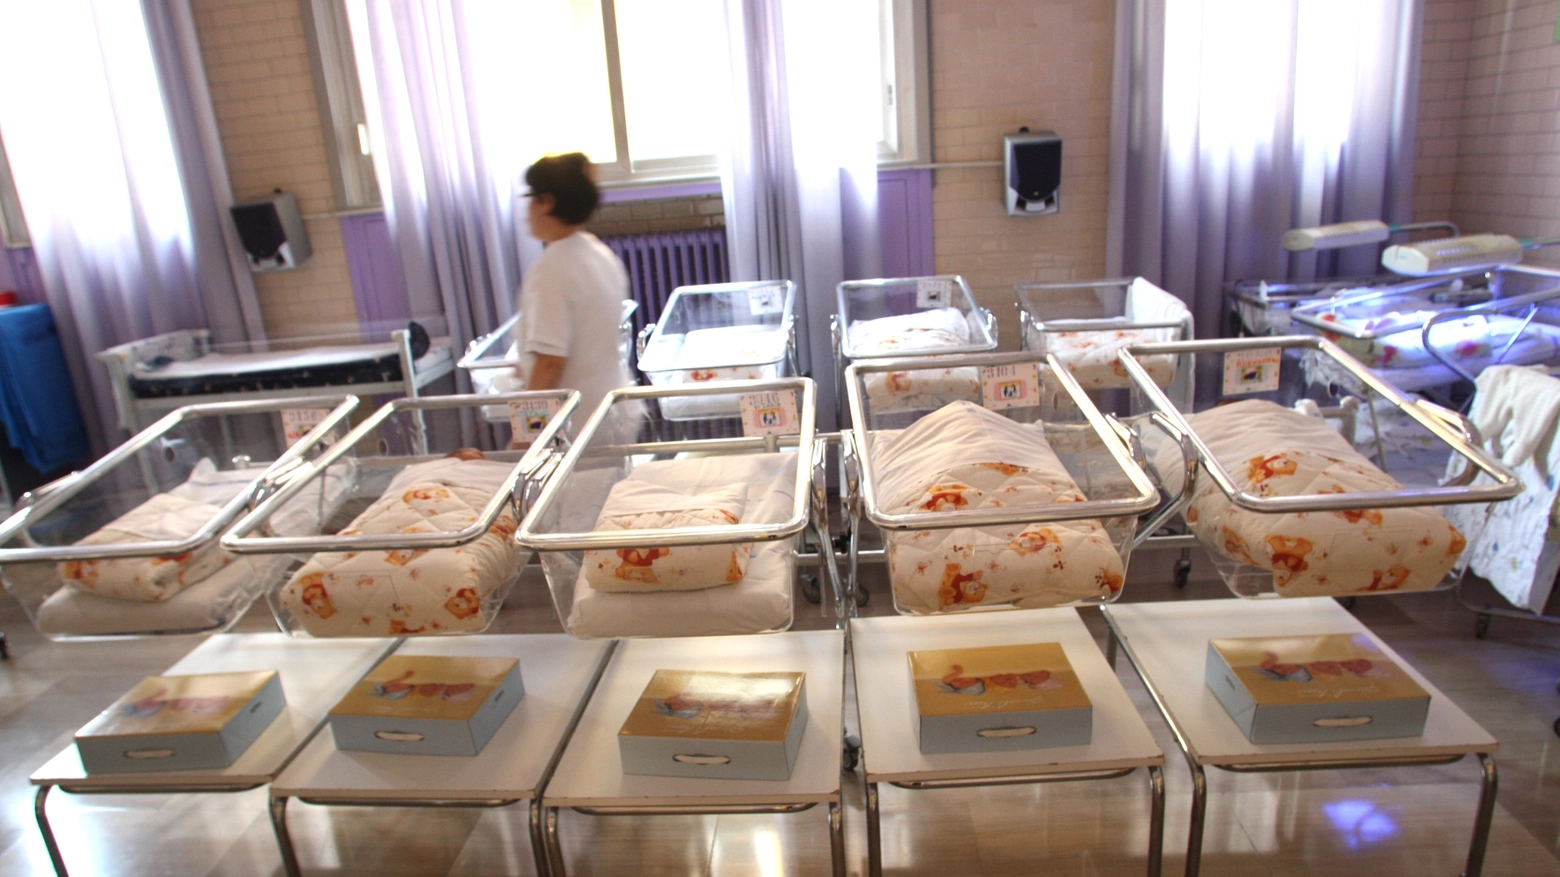 Un reparto di maternità (Newpress)